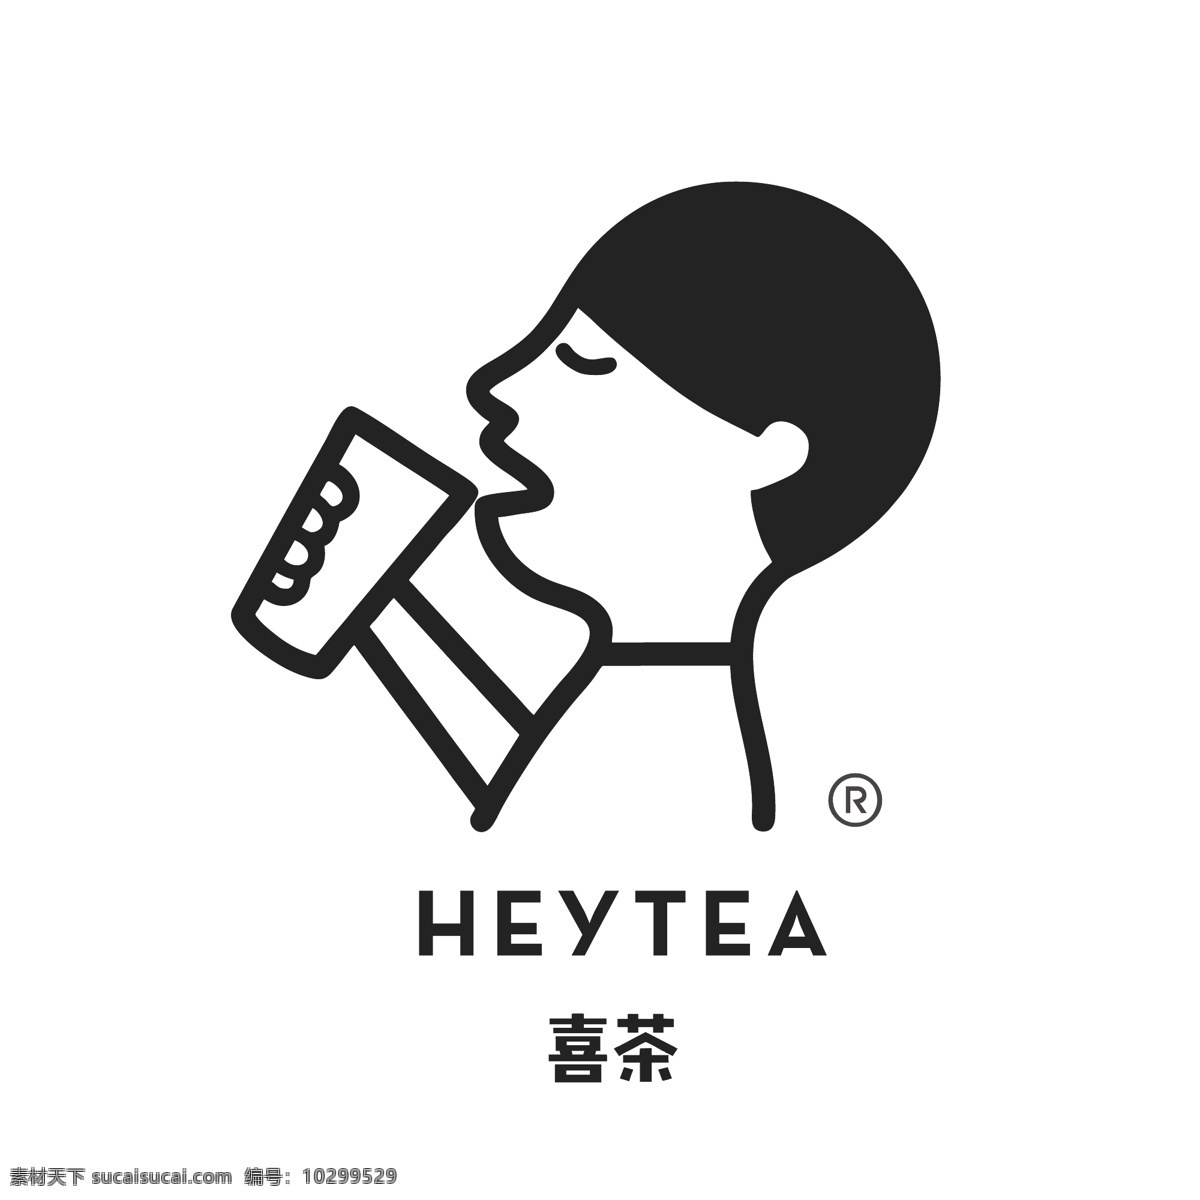 喜 茶 heyteab logo 喜茶 标准 矢量高清 vi标准 logo设计